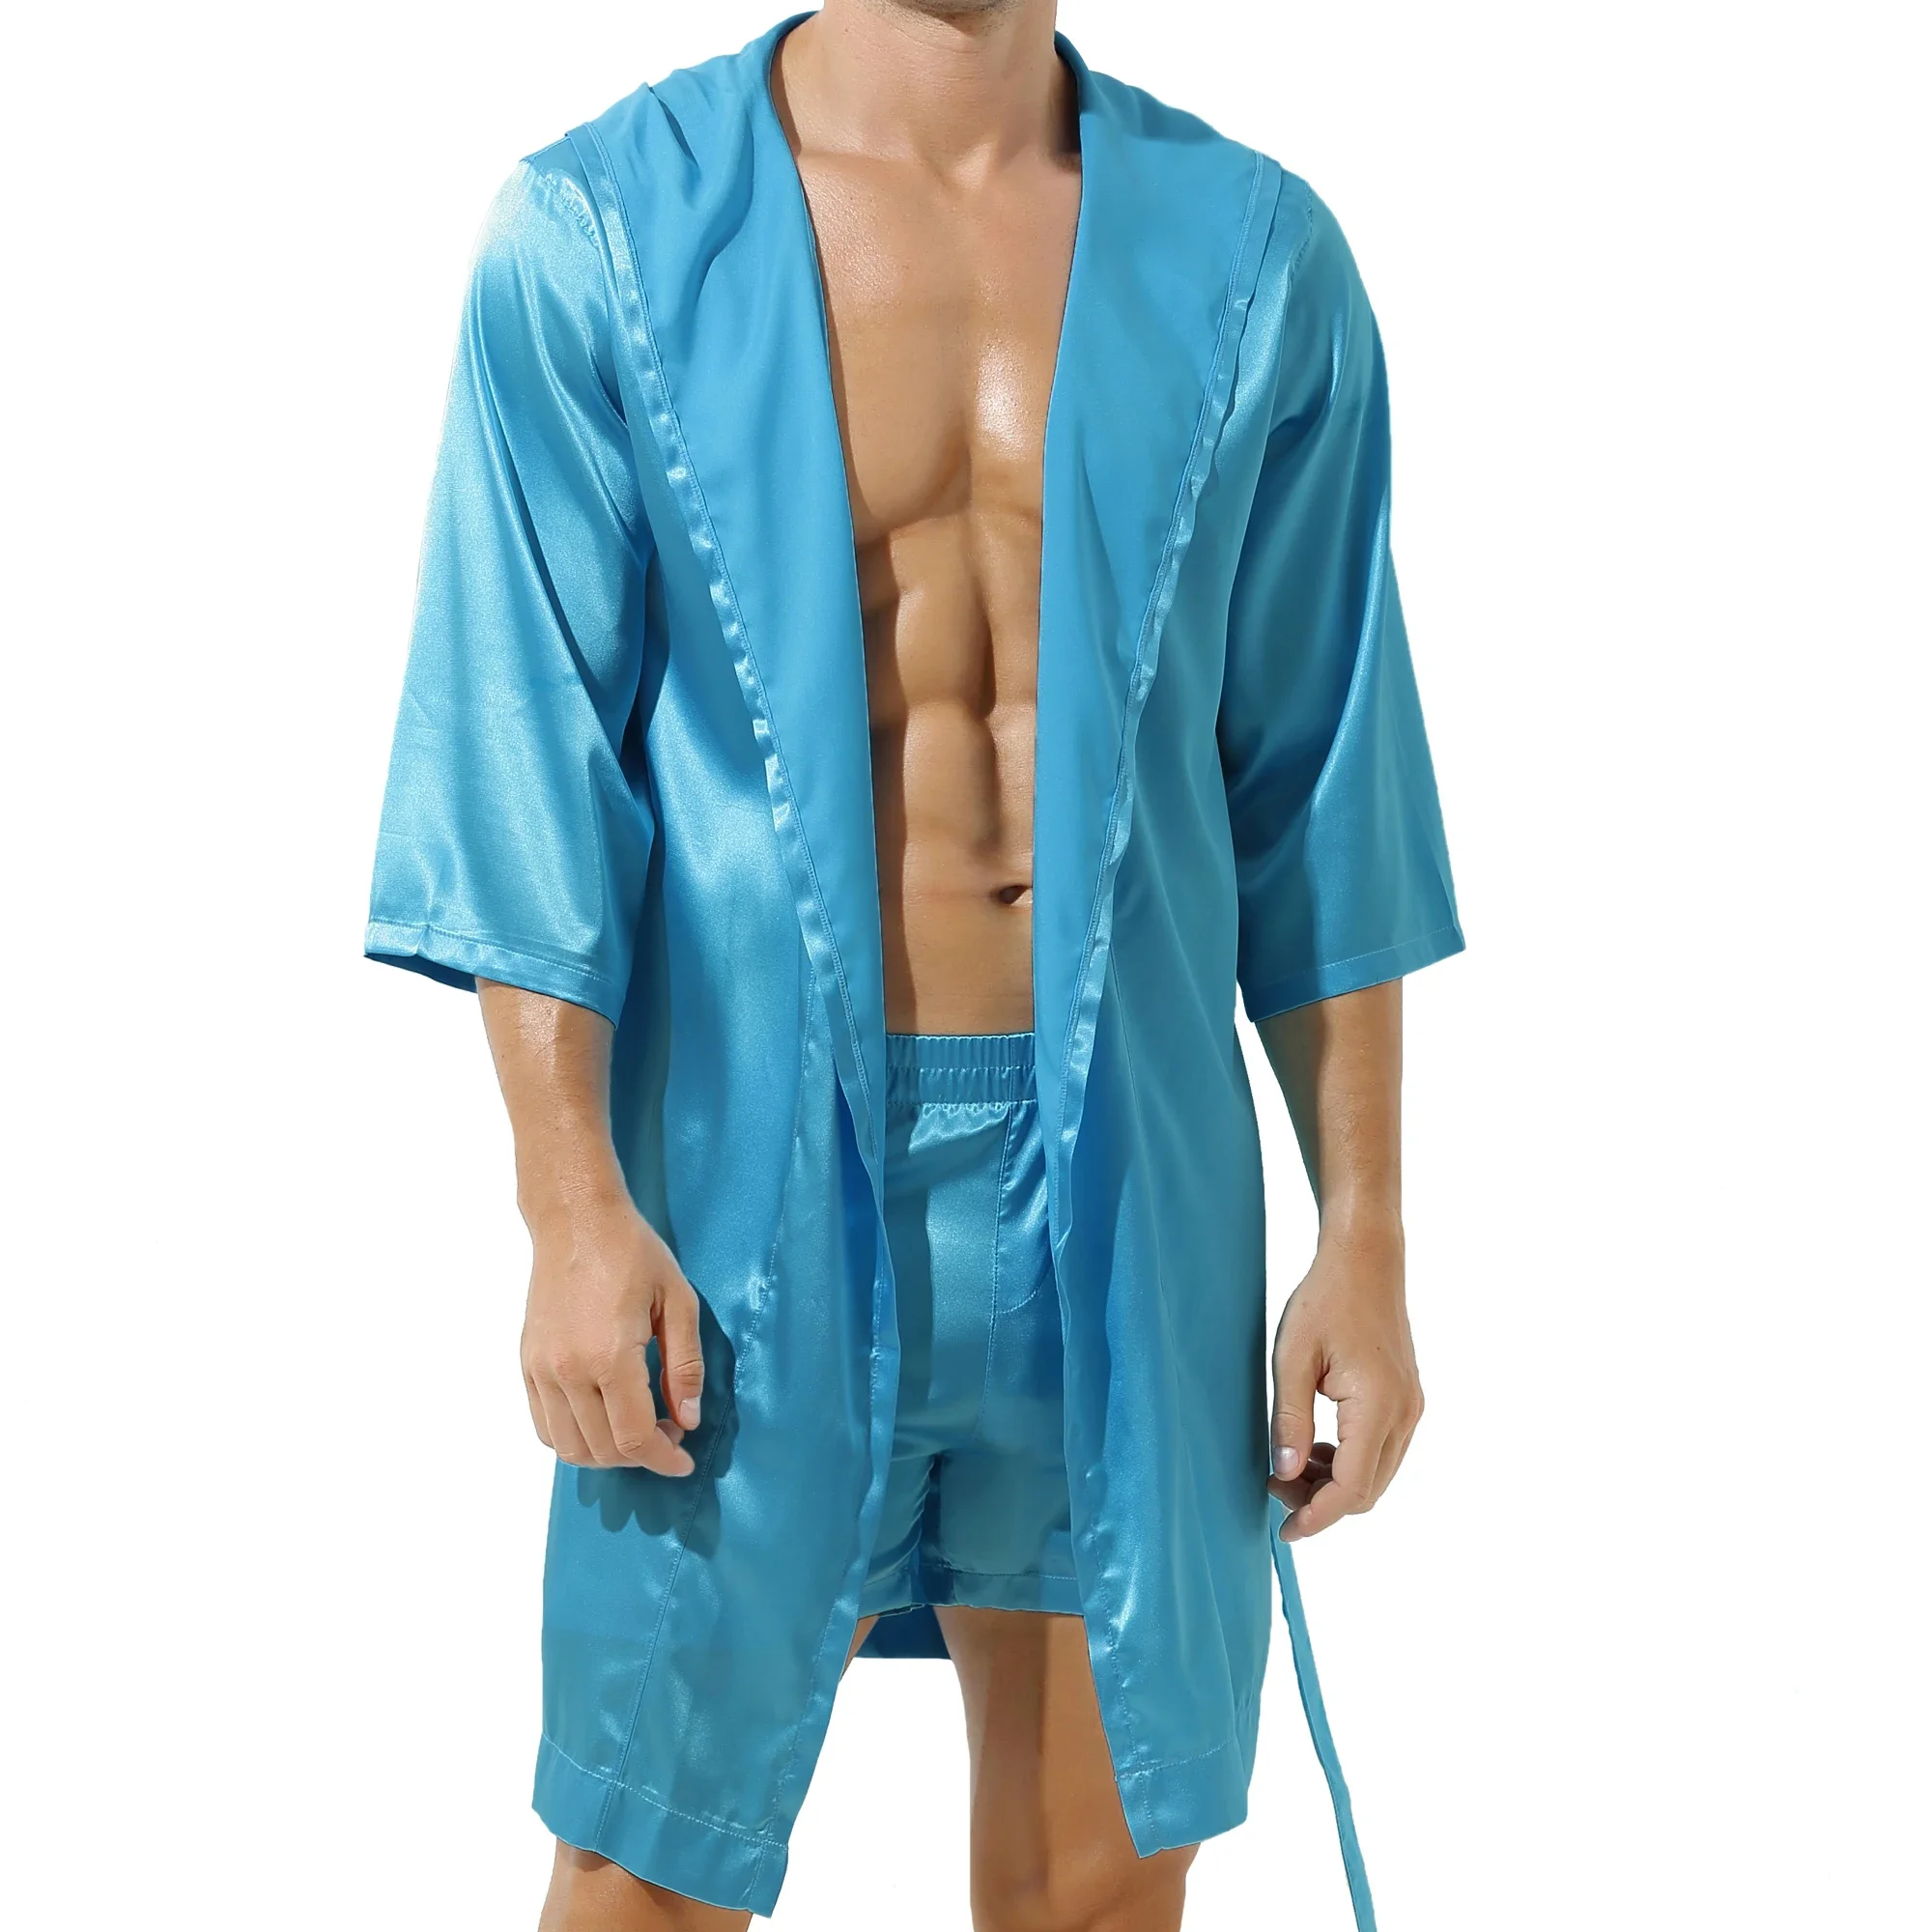 Homens de seda mancha de seda kimono túmulo de roupão de banho conjunto de pijamas vestes de túnica sexy satin roupão vestes de roupas de dormir manto camisola